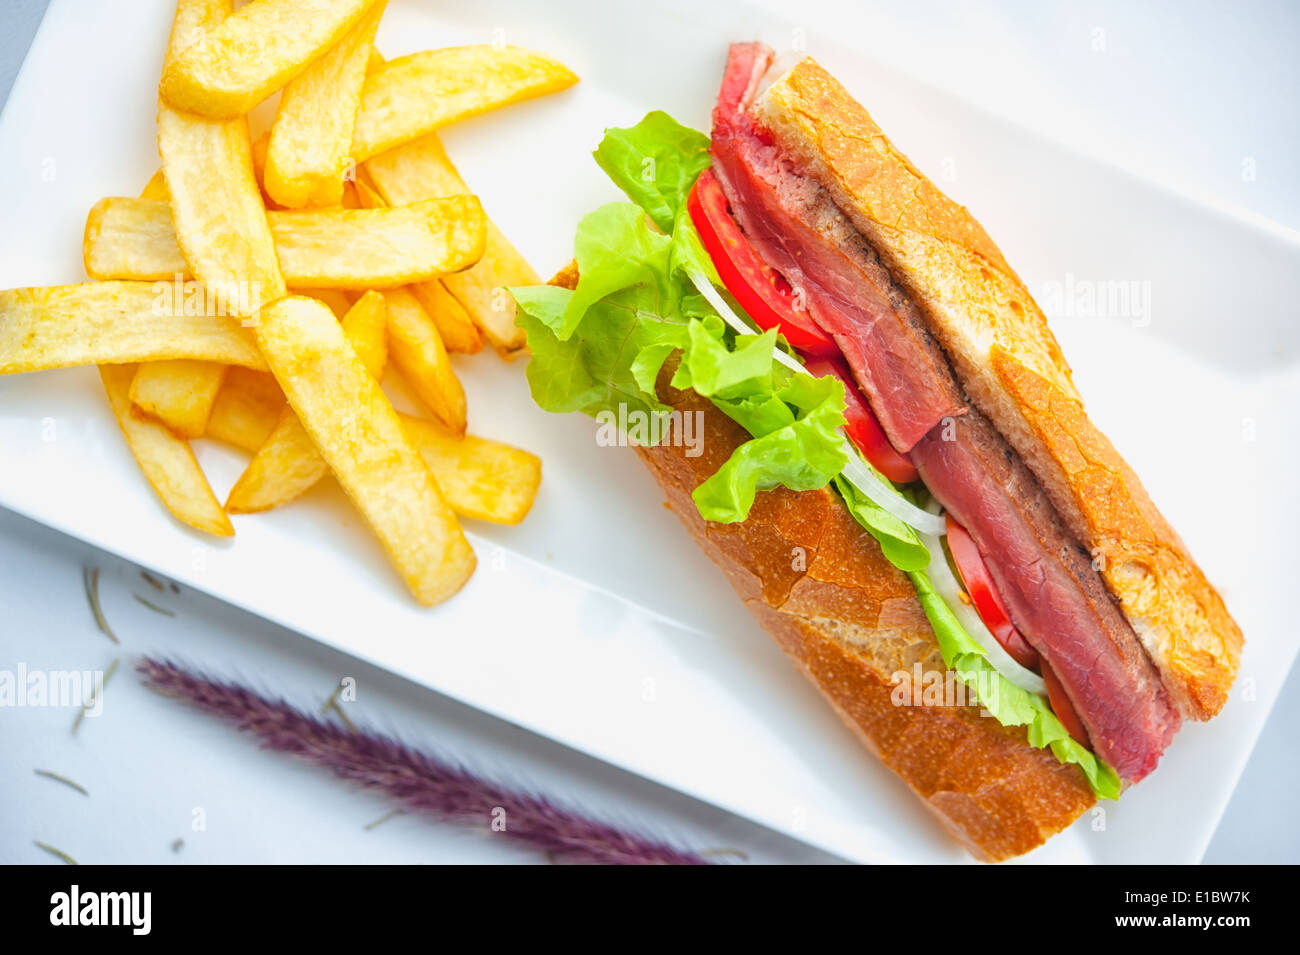 Beef steak sandwich e patatine fritte sul piatto bianco Foto Stock